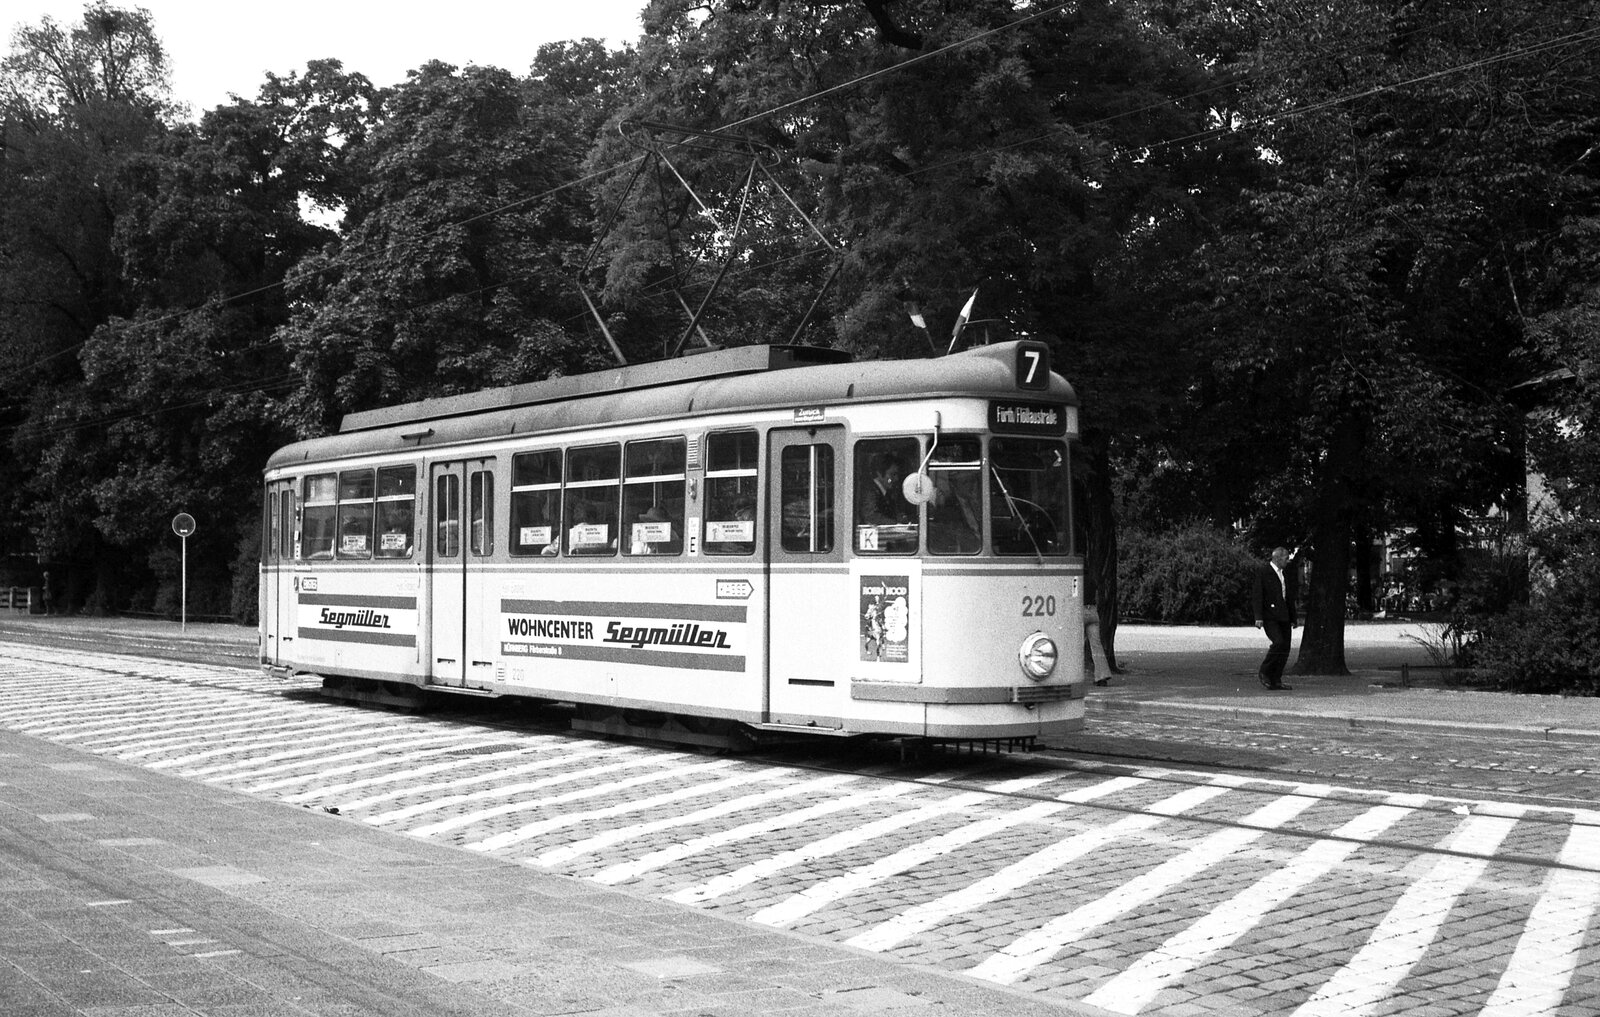 Nürnberg-Fürther Straßenbahn__Tw 220 [T4; MAN/Siemens 1958] auf der Fürther  Binnenlinie  7 zwischen Billinganlage und Flößaustraße fährt über die 'Fürther Freiheit'.__15-06-1976